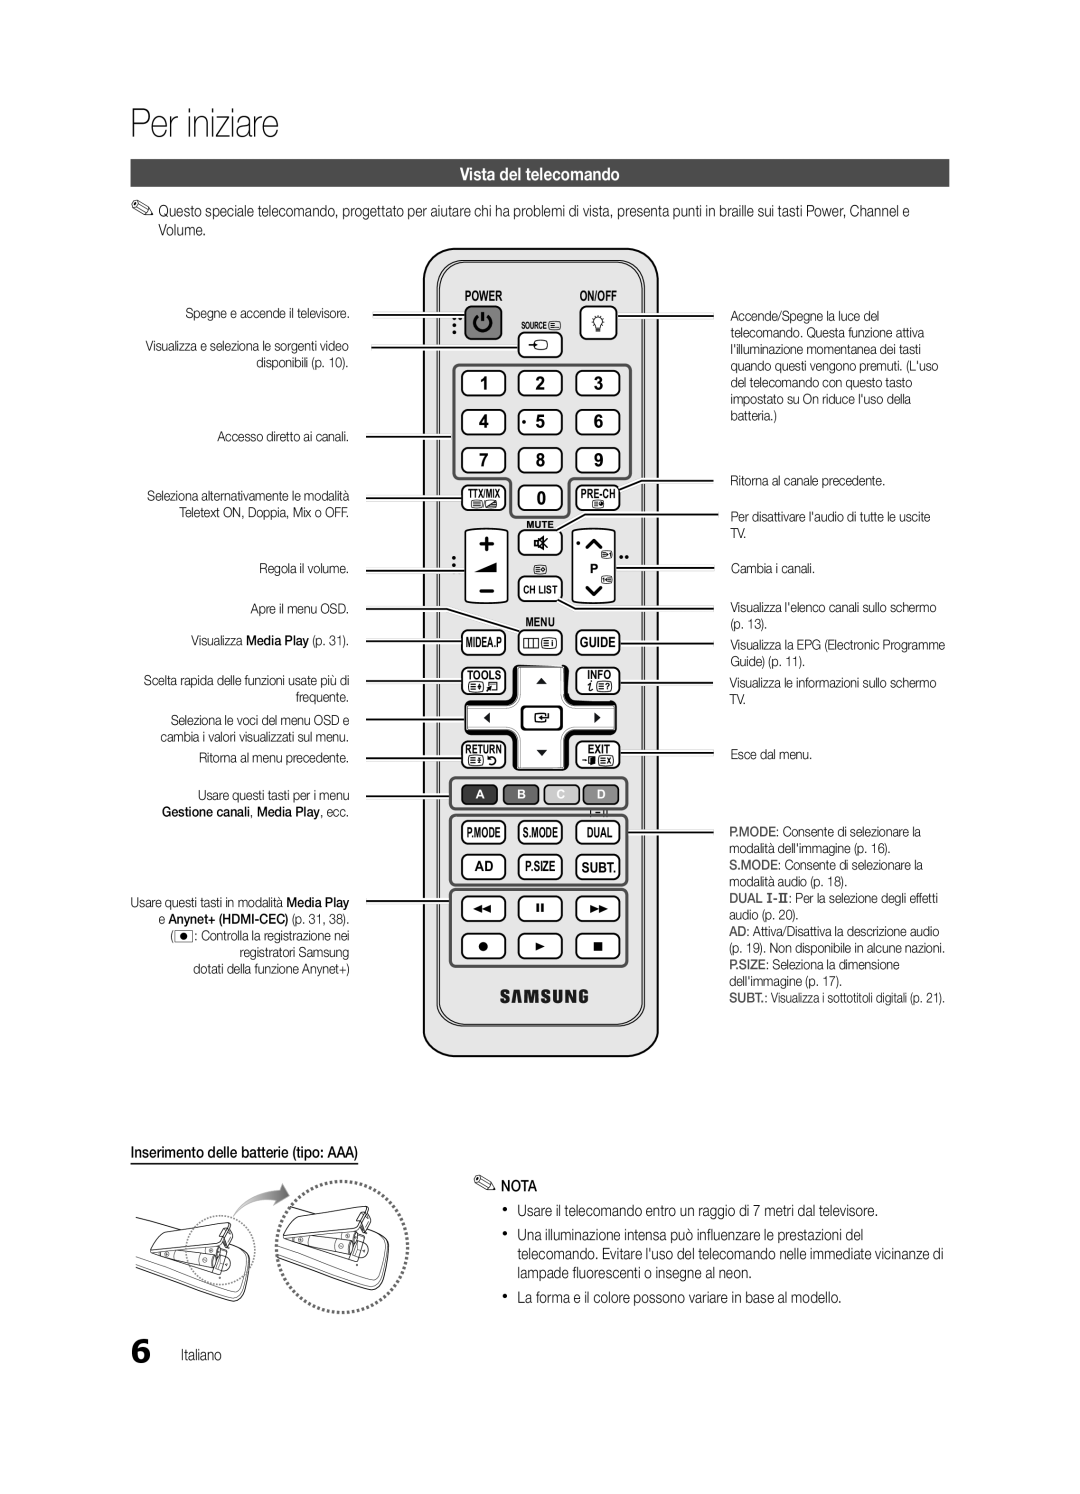 Samsung UE40C5700QSXZG Vista del telecomando, Per iniziare, Power On/Off, P.Mode S.Mode Dual Ad P.Size Subt, Midea.P Guide 